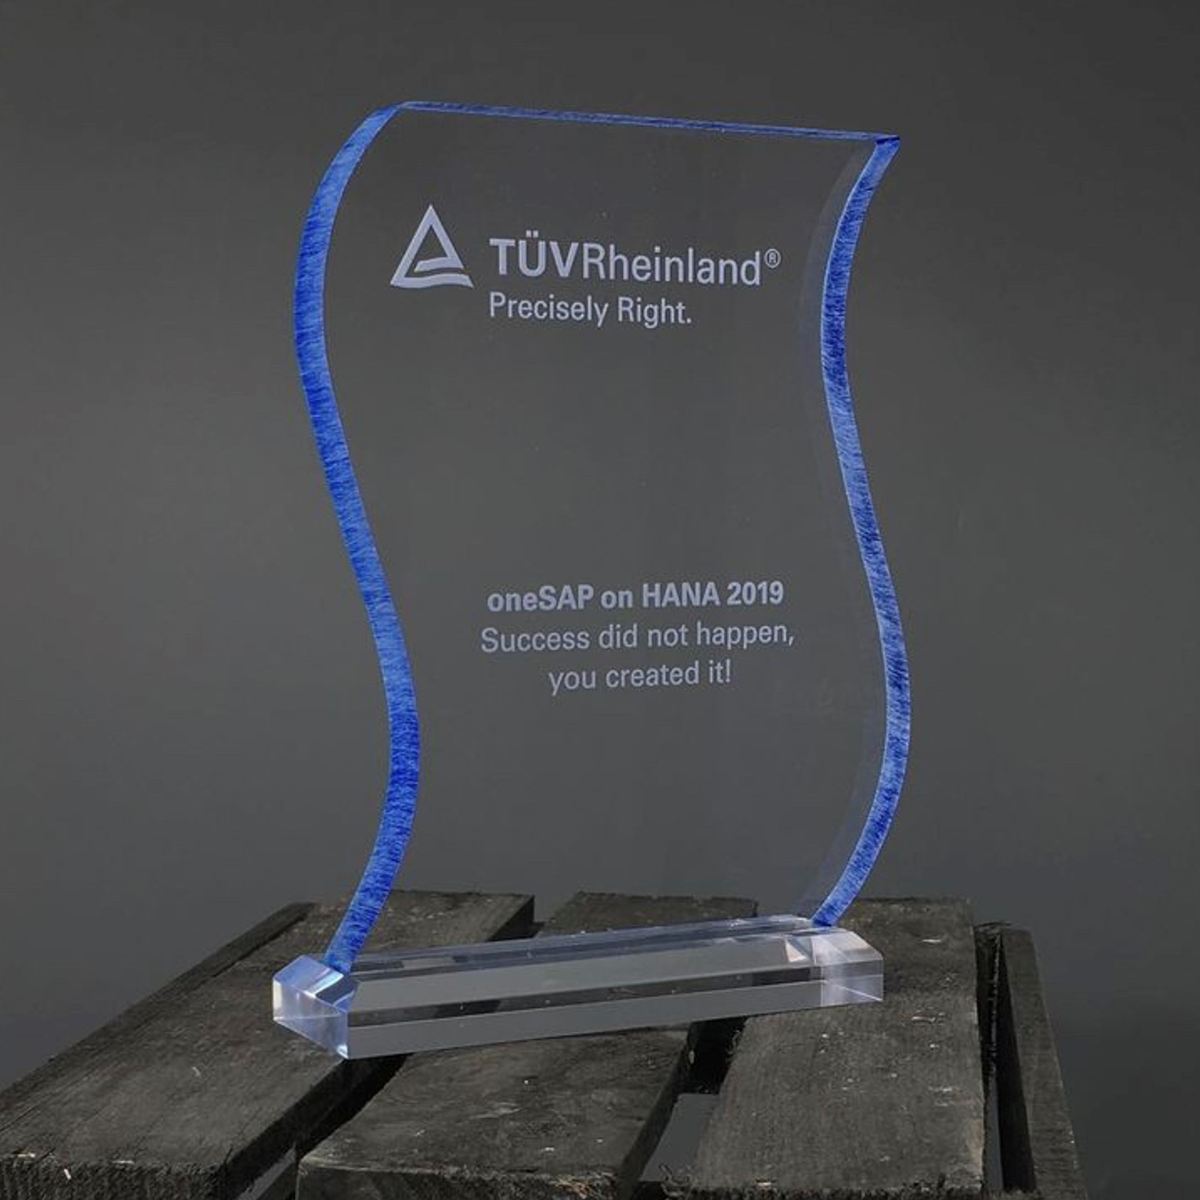 TÜV Rheinland - Acrylglas Award mit UV-Druck